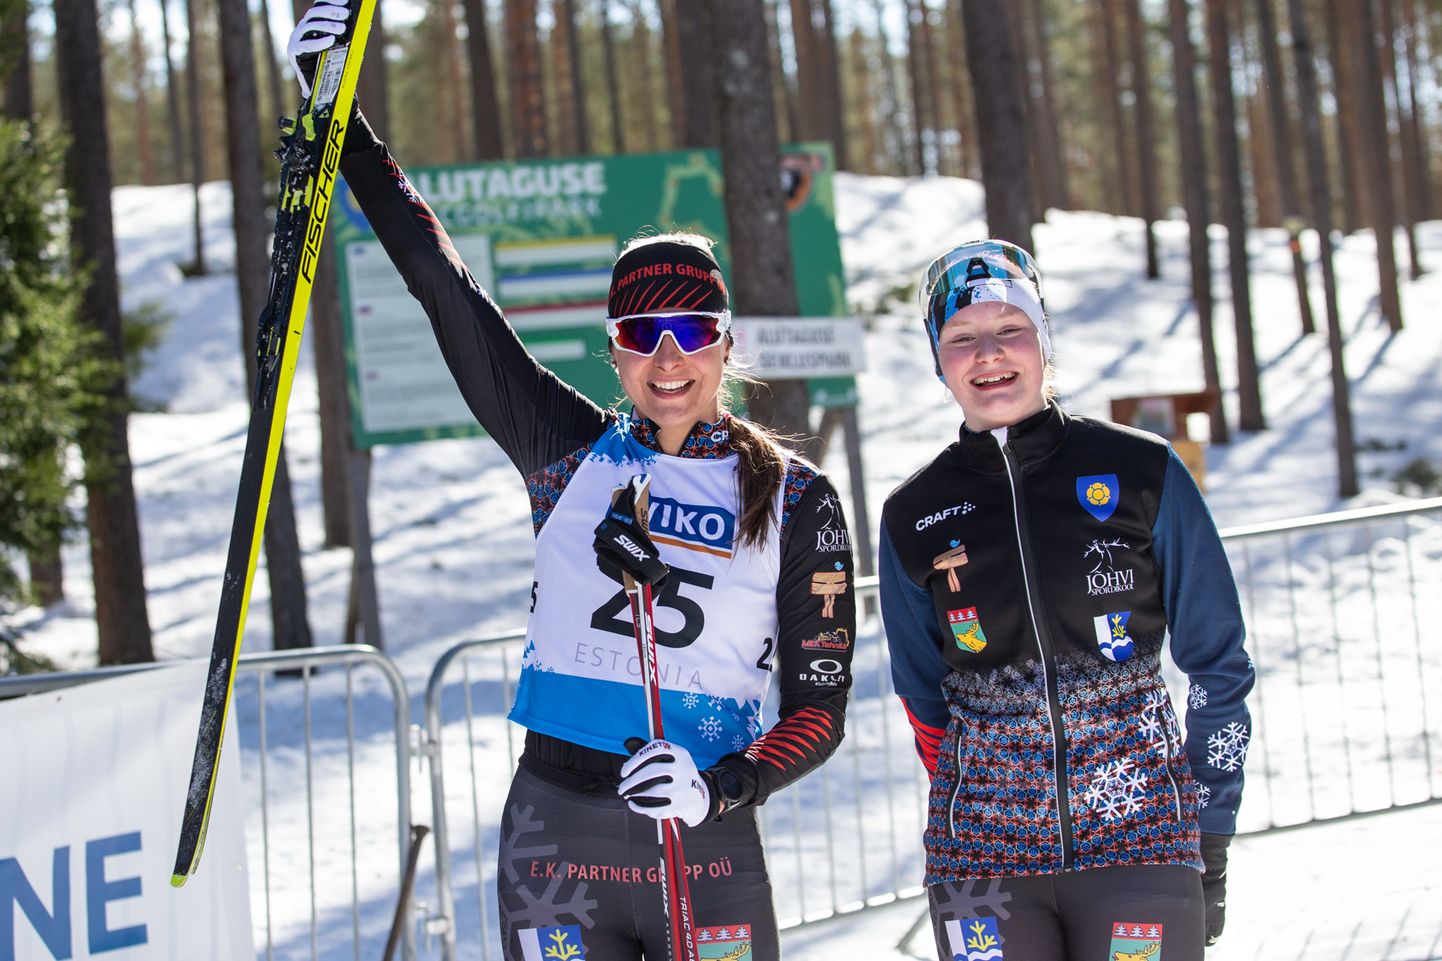 Девчата из Алутагузеского лыжного клуба Херта Раяс и Авели Уусталу только что стали чемпионками Эстонии среди взрослых.